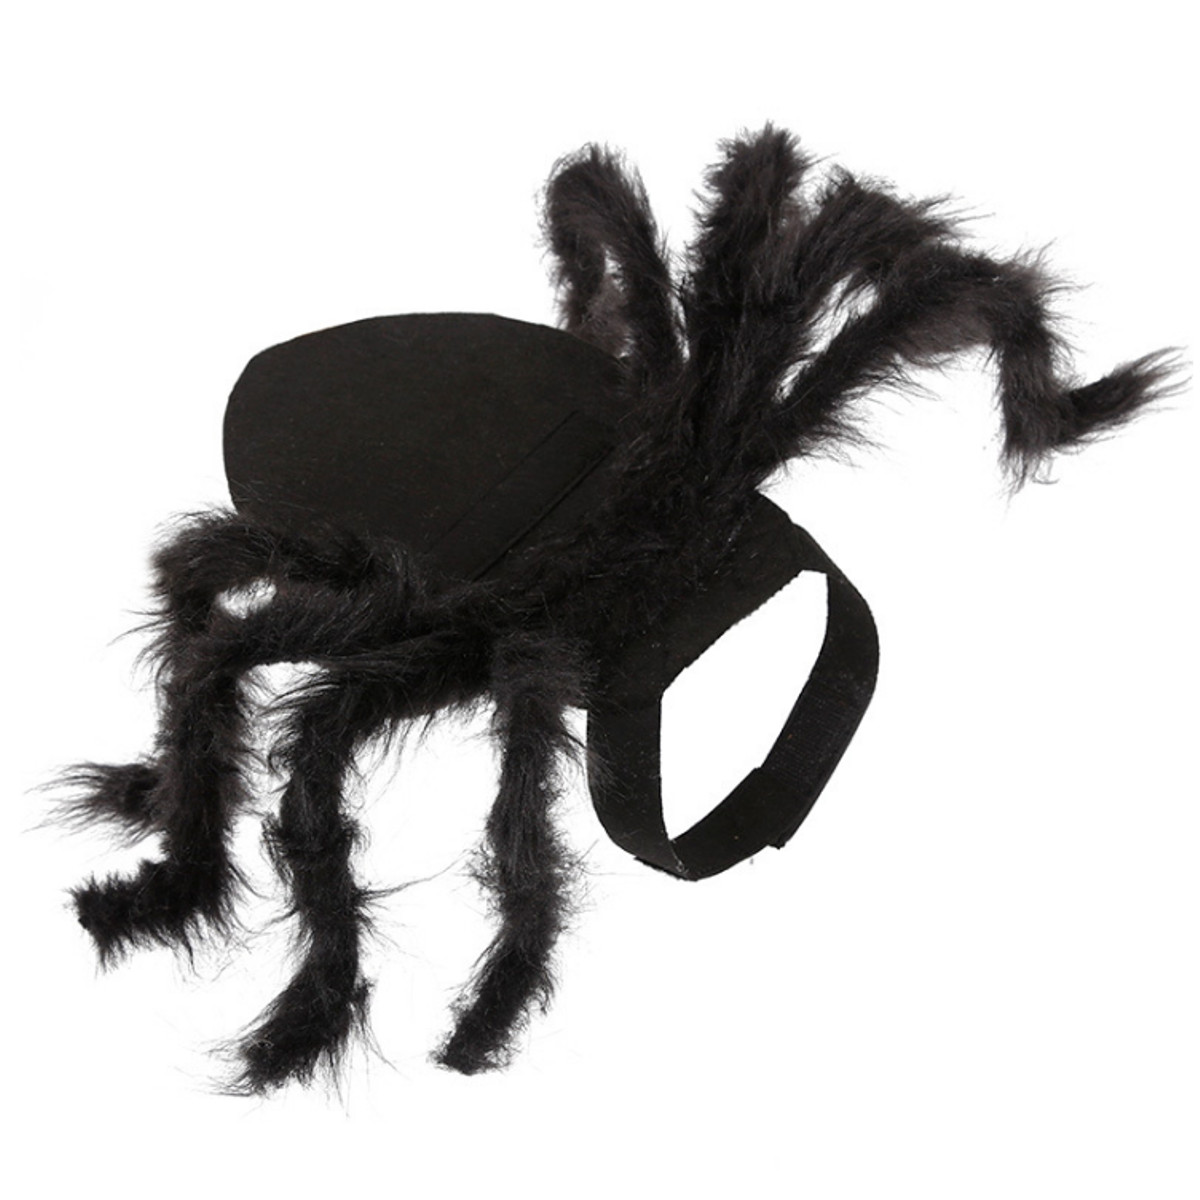 

Halloween Spider Pet Костюм Прохладный Косплей Одежда для Собака Щенок Веселая Вечеринка Домашние животные Поставки